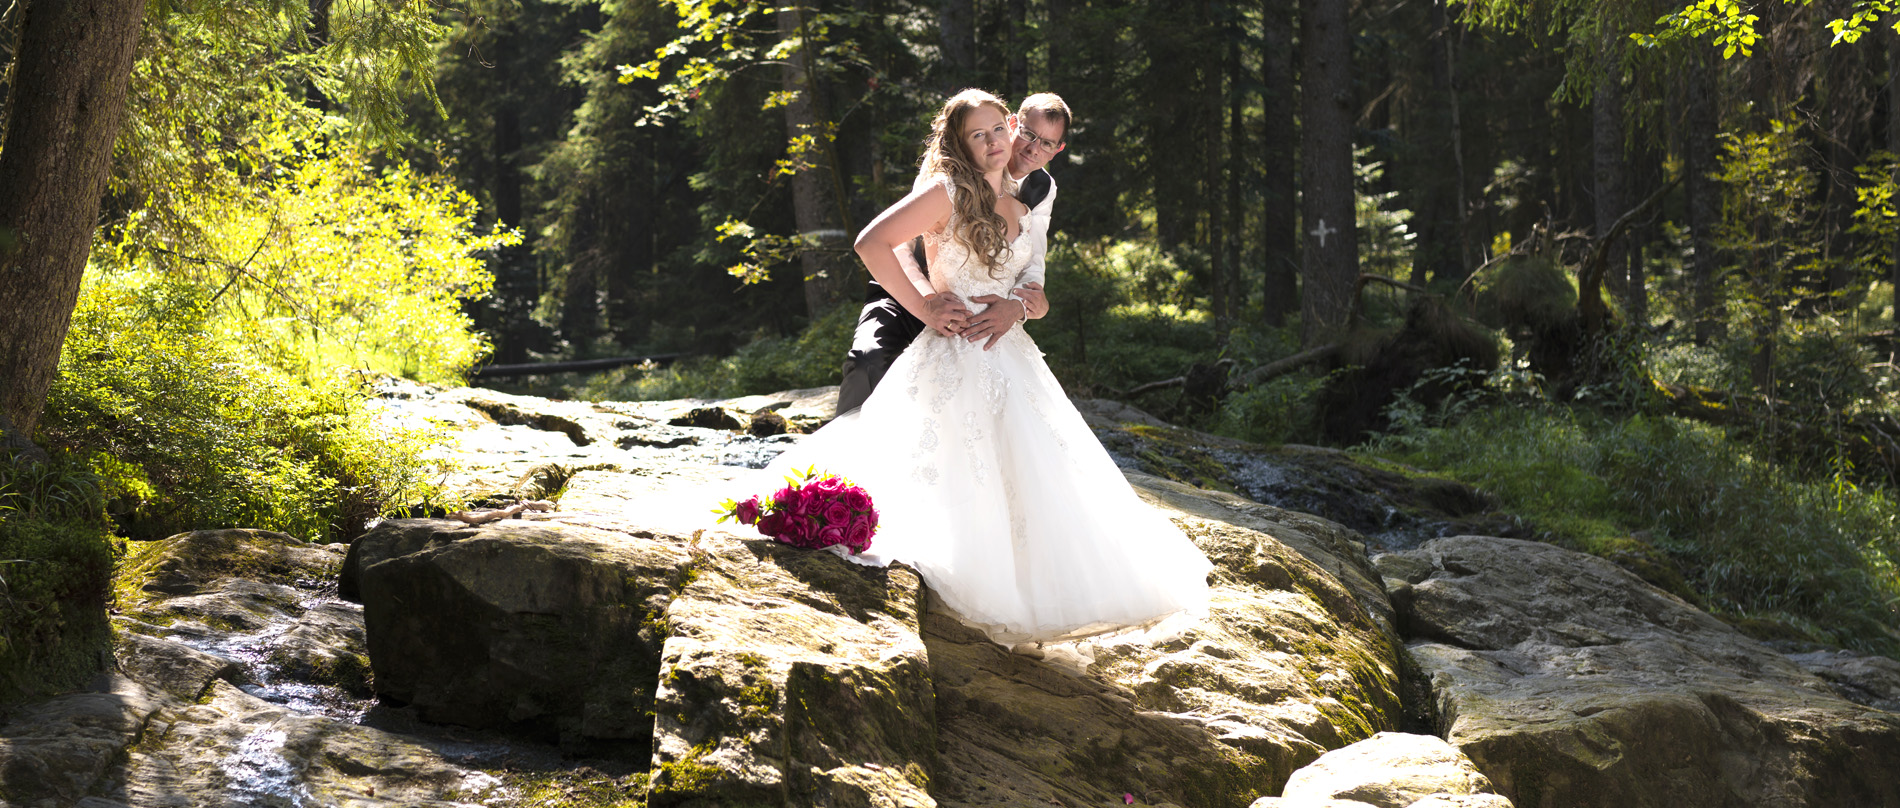 Hochzeitsfotograf, Brautpaar, Wald, Wasserlauf, Brautstrauß